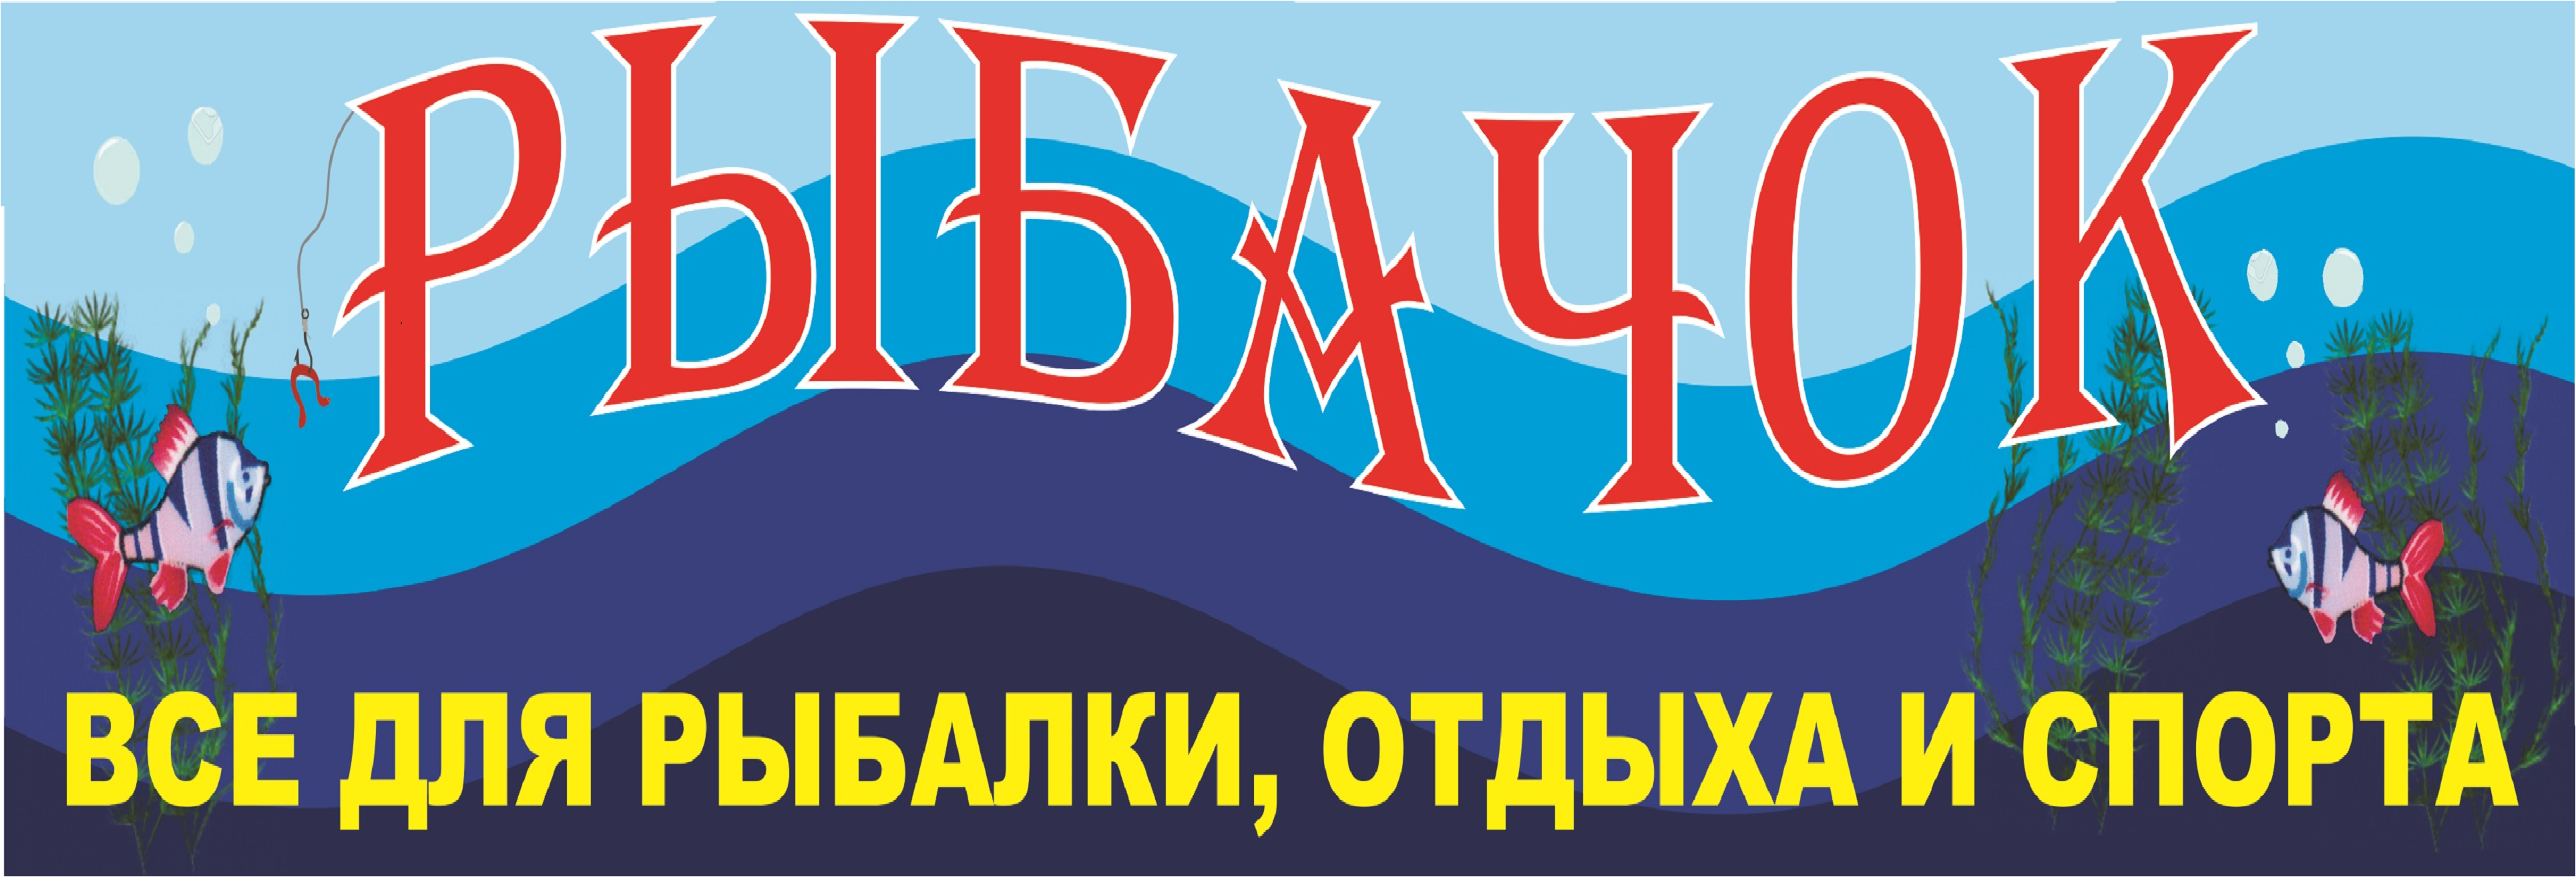 Рыбачок Интернет Магазин Москва Официальный Сайт